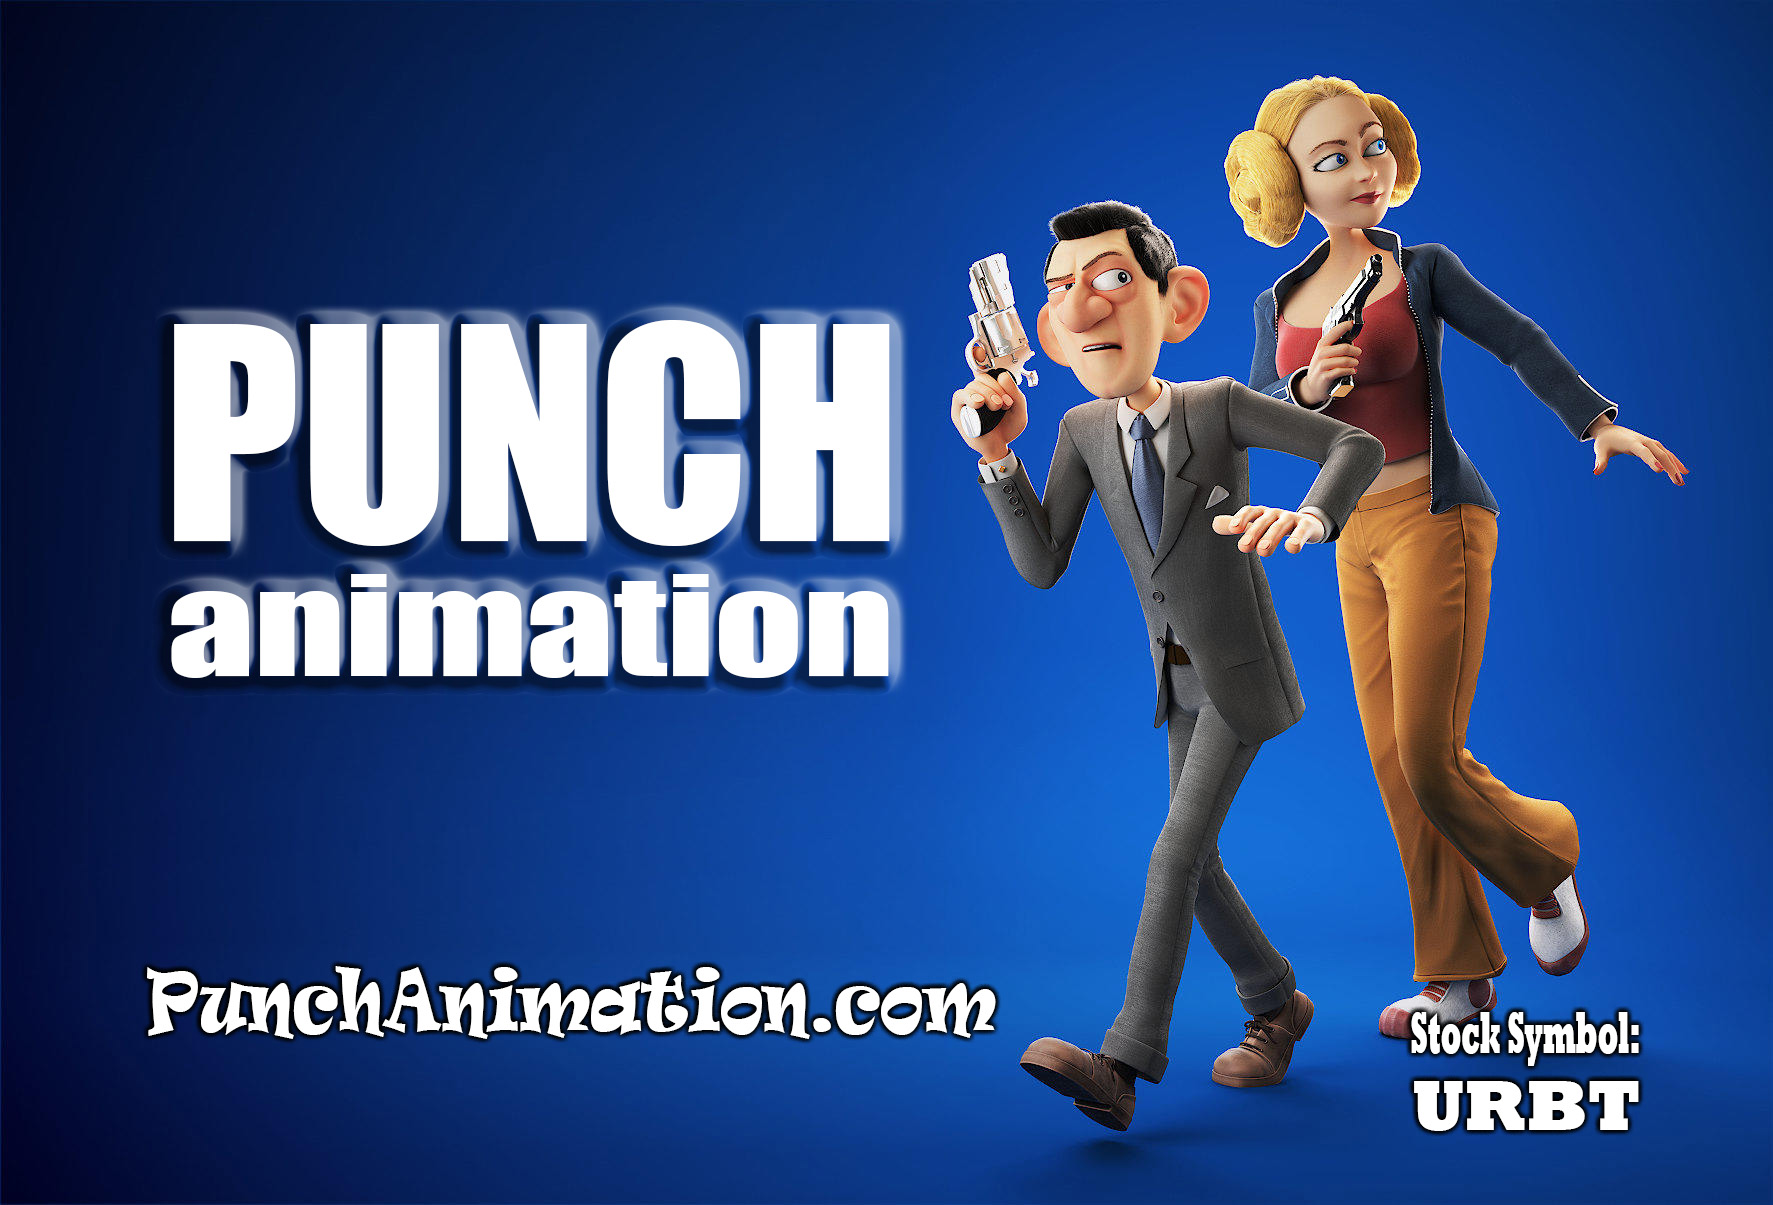 punch animation logo